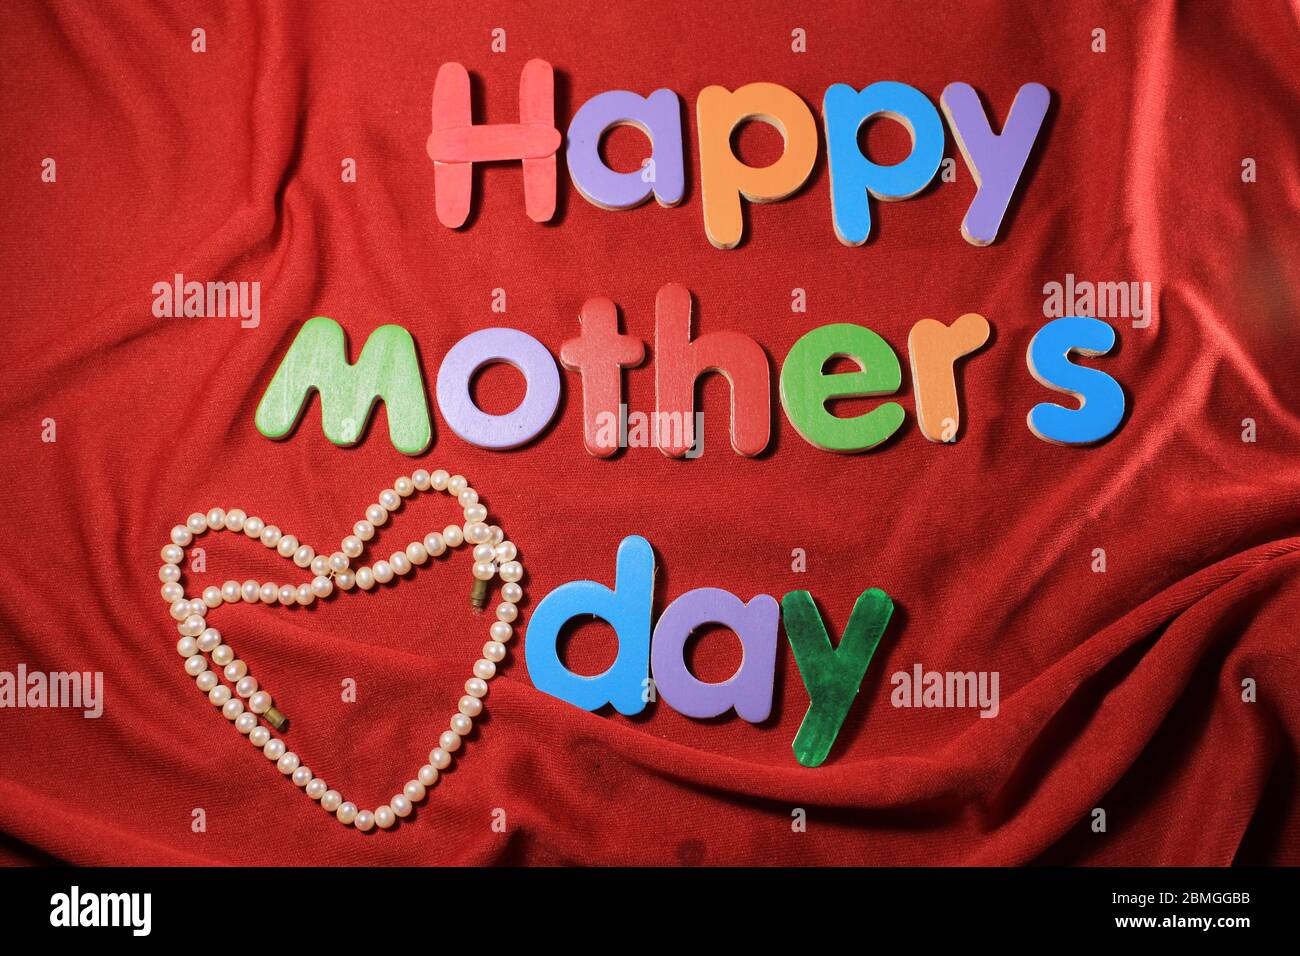 Joyeux fête des mères écrit sur fond de tissu rouge texturé. Bonne fête des mères écrite par des blocs d'alphabet colorés. Banque D'Images